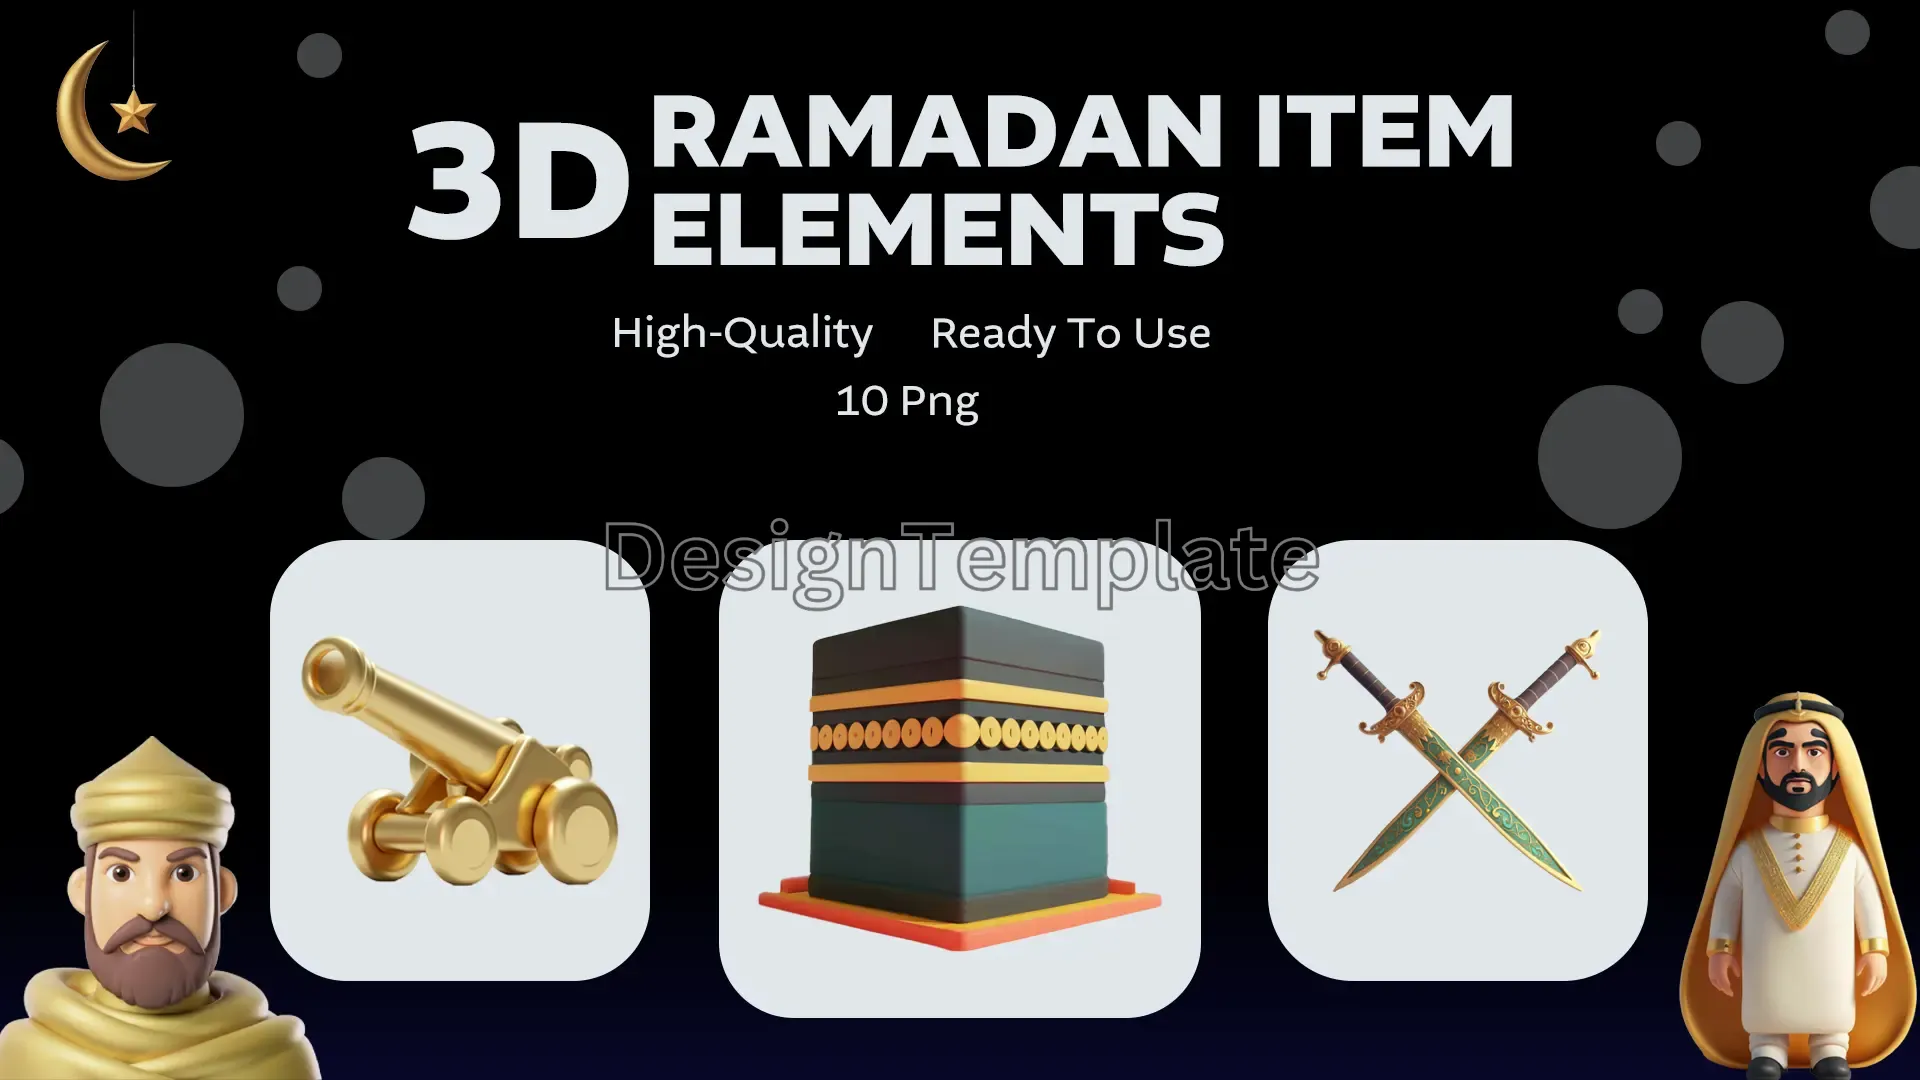 Ramadan Rituals 3D Ramadan Item Elements Pack image